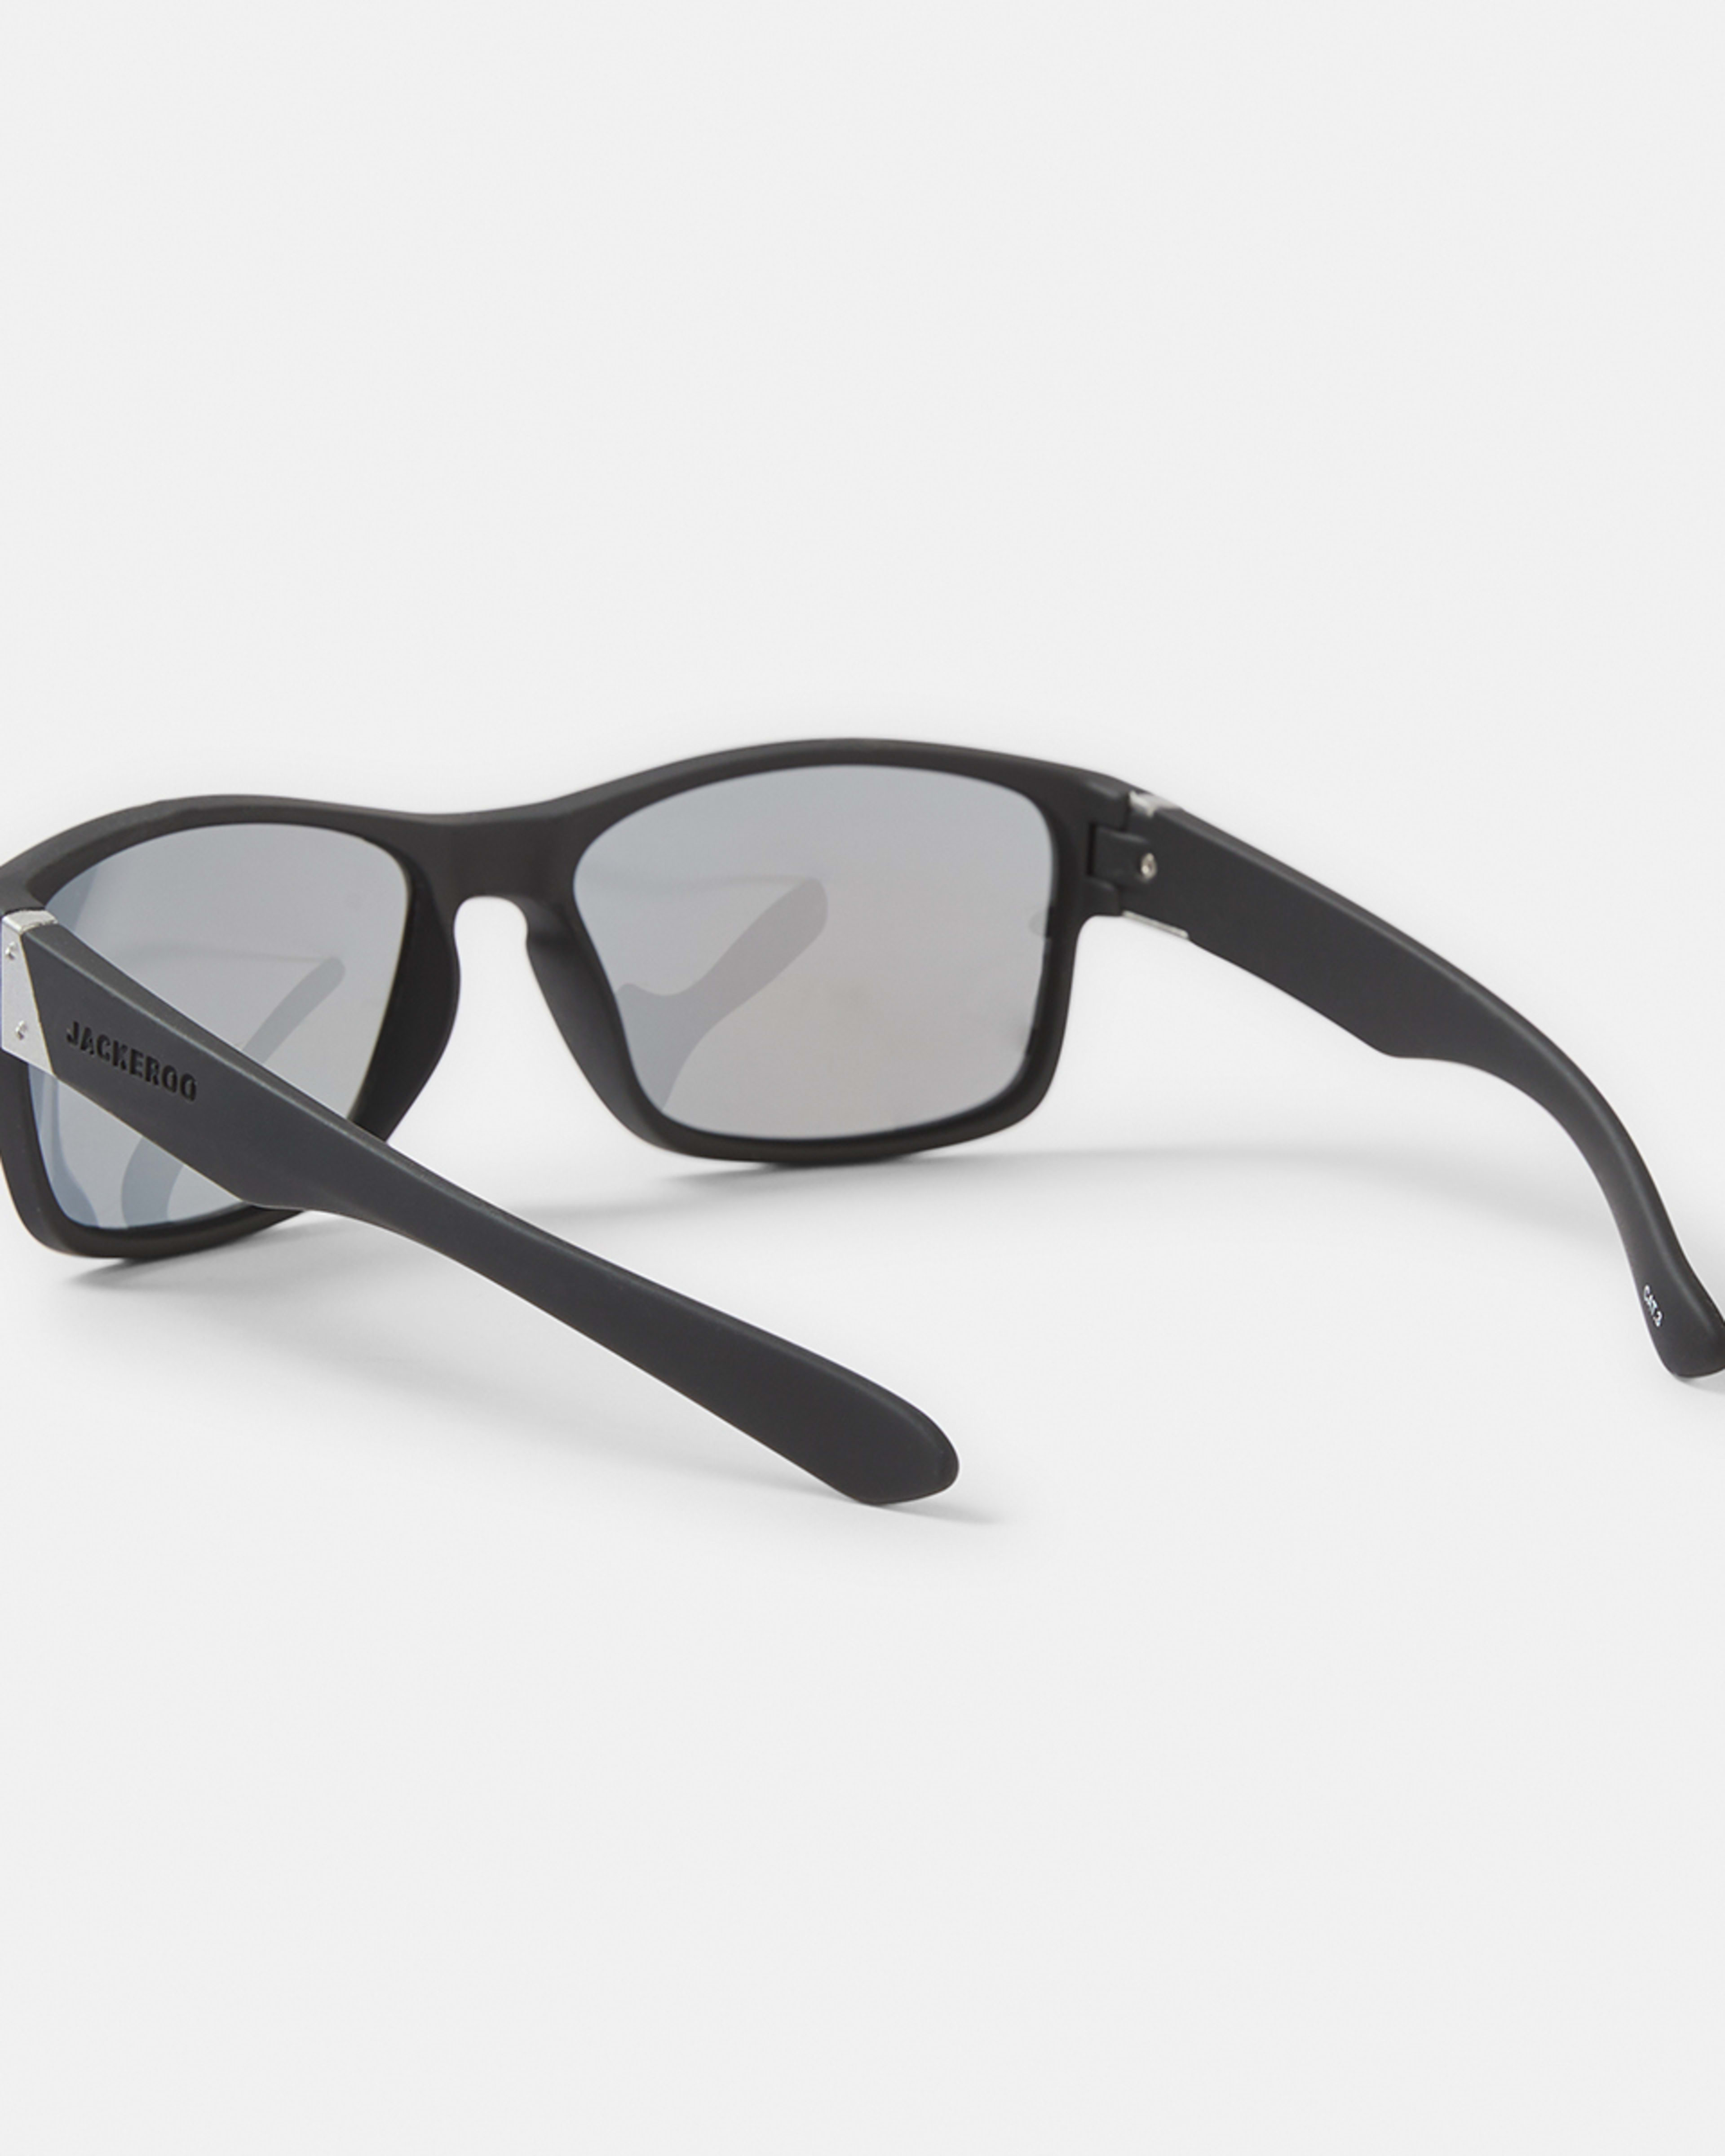 Jackaroo Polarised Sunglasses - Kmart